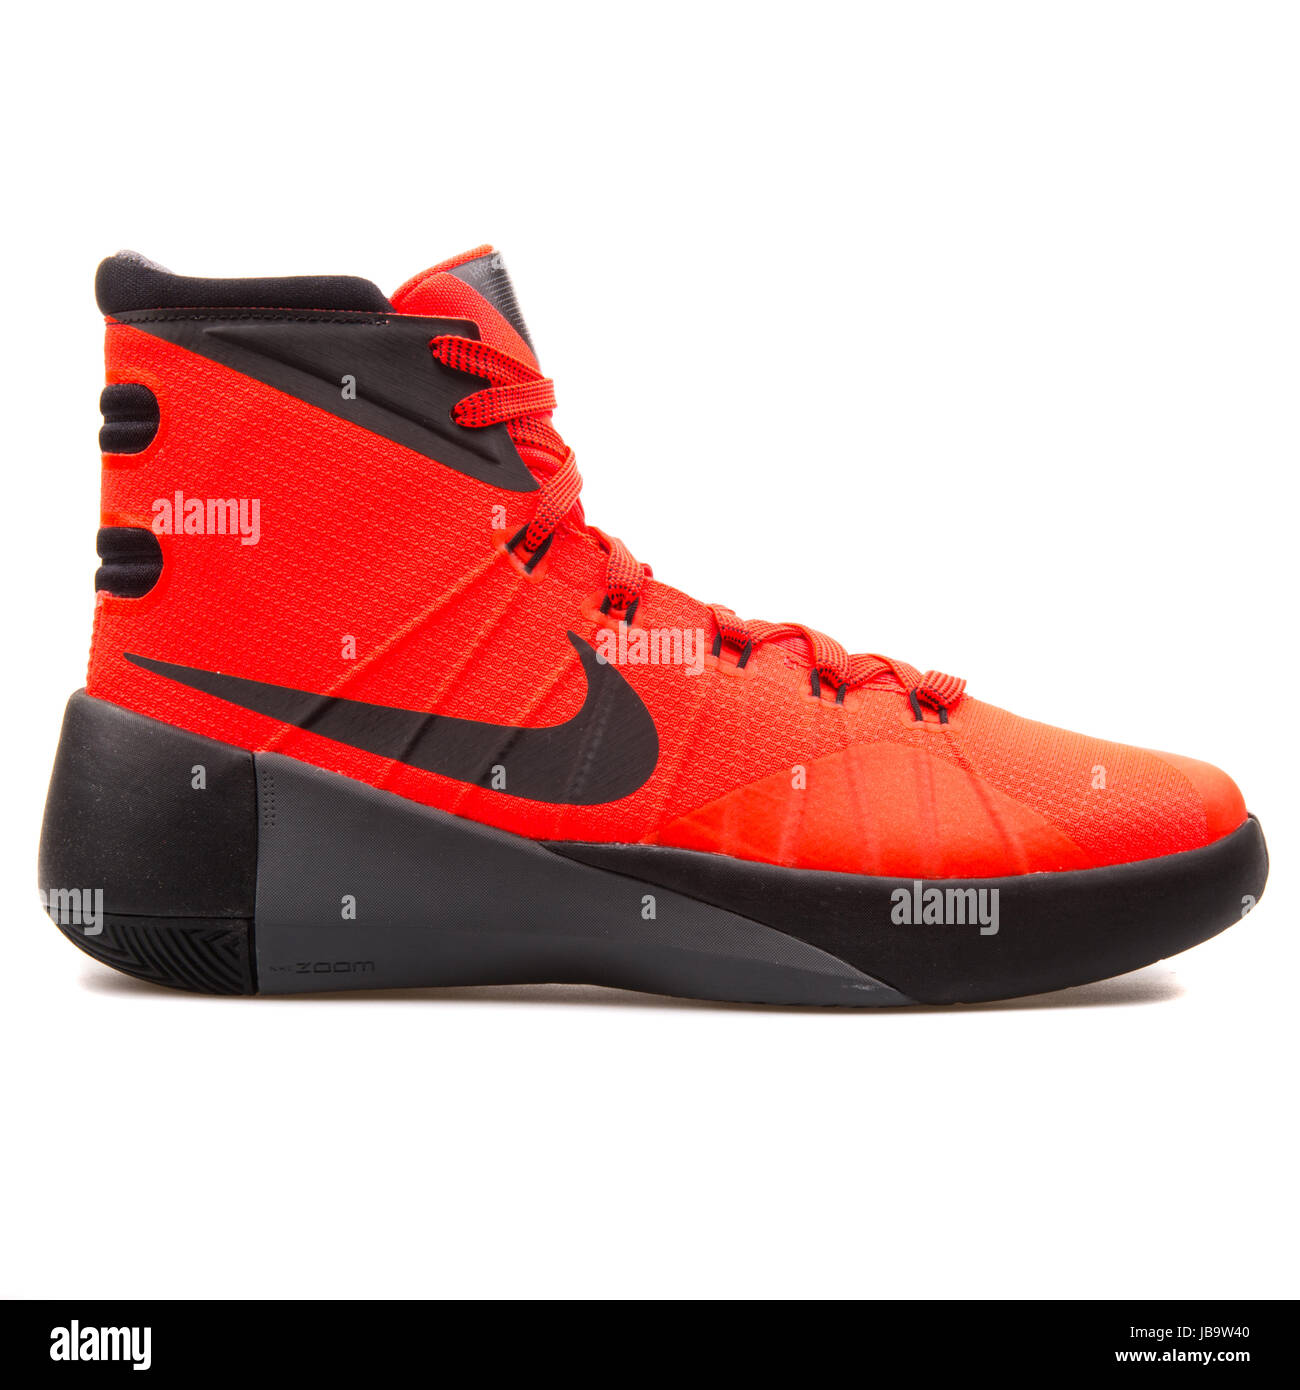 Nike 2015 (GS) Brillante color y negro zapatillas de baloncesto de la Juventud 759974-600 Fotografía de stock -